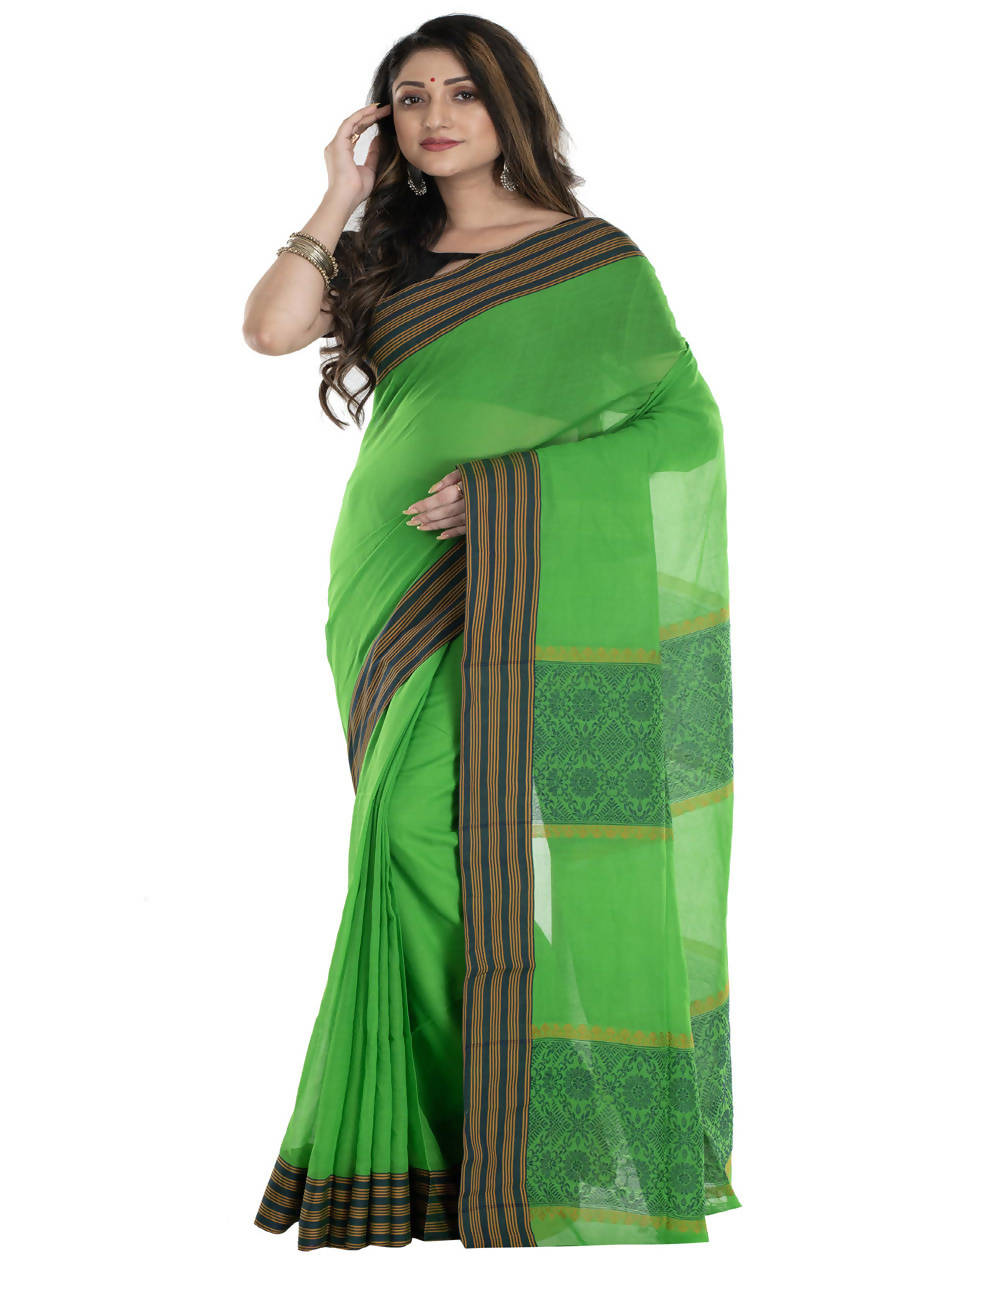 Green bengal cotton handwoven saree